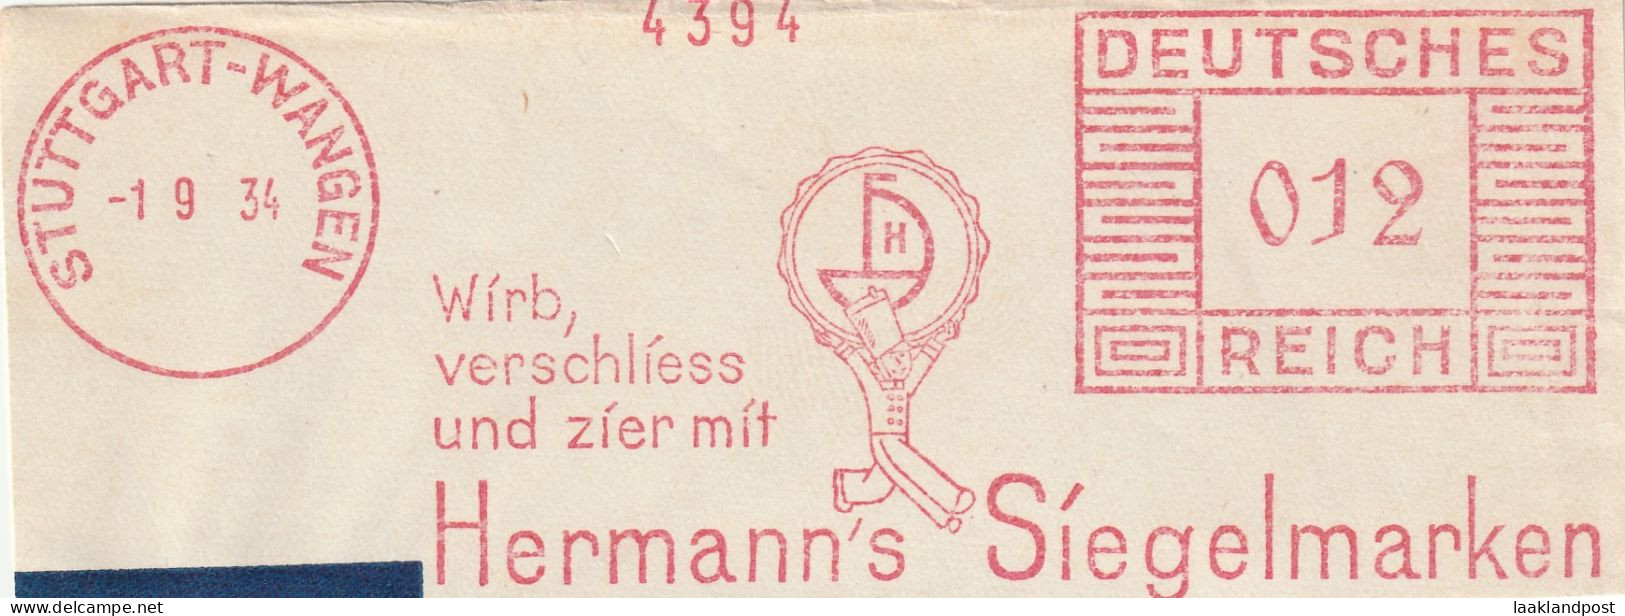 Deutsche Reichpost Nice Cut Meter Freistempel  Wirb, Verschliess Und Zier Miot Hermann's Siegelmarken, Stuttgart-Wangen - Franking Machines